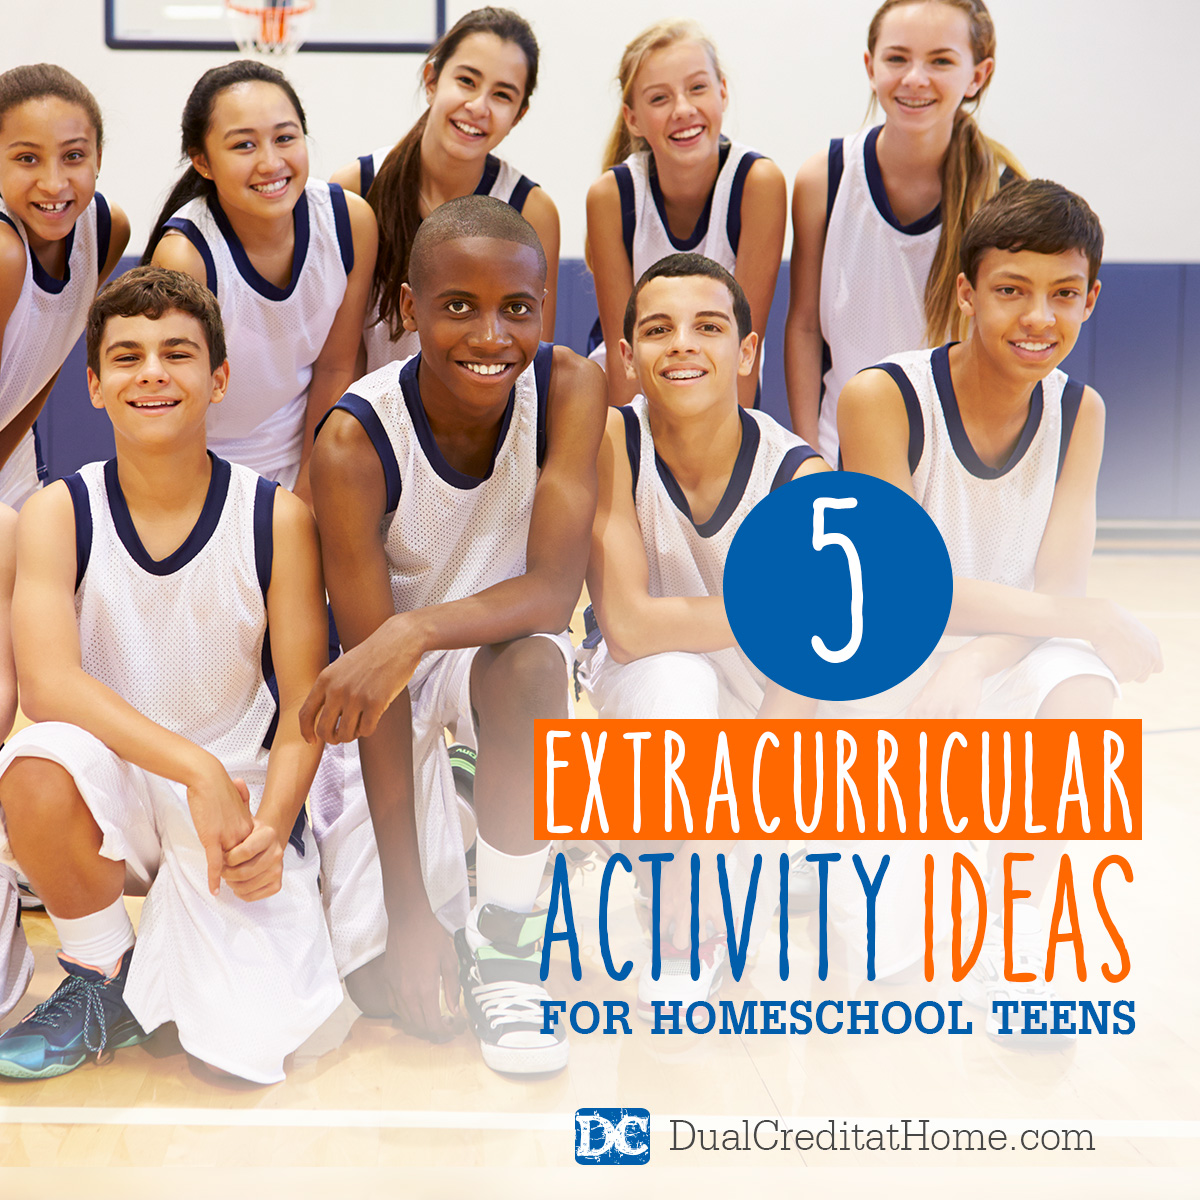 5 Extracurricular Activity Ideas for Homeschool Teens